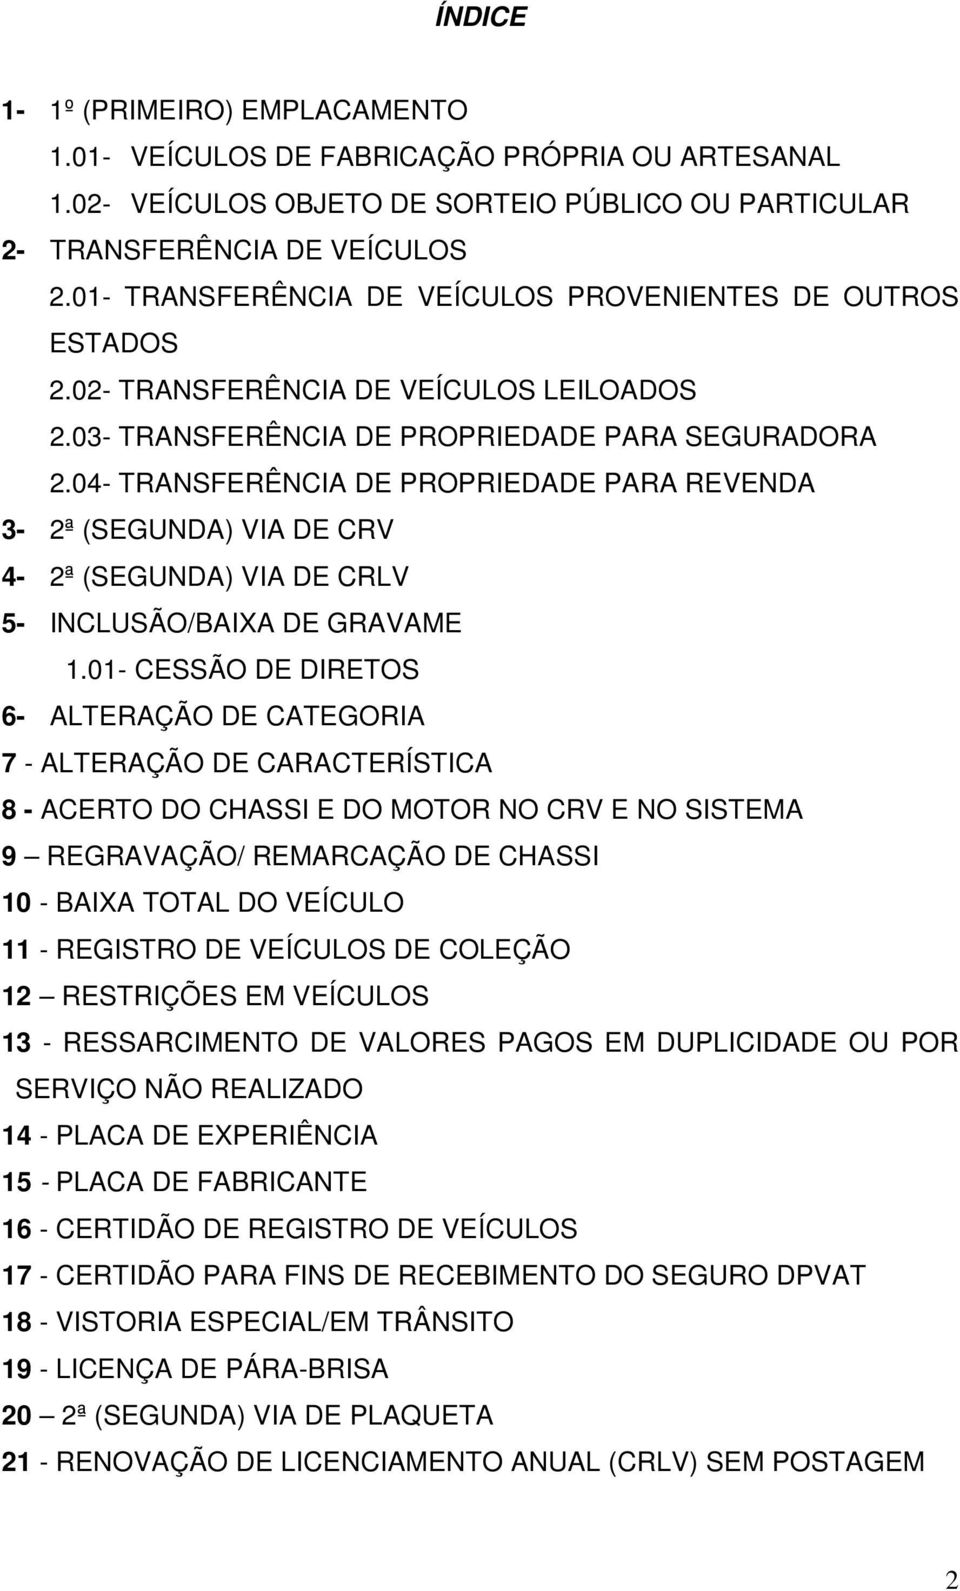 04- TRANSFERÊNCIA DE PROPRIEDADE PARA REVENDA 3-2ª (SEGUNDA) VIA DE CRV 4-2ª (SEGUNDA) VIA DE CRLV 5- INCLUSÃO/BAIXA DE GRAVAME 1.